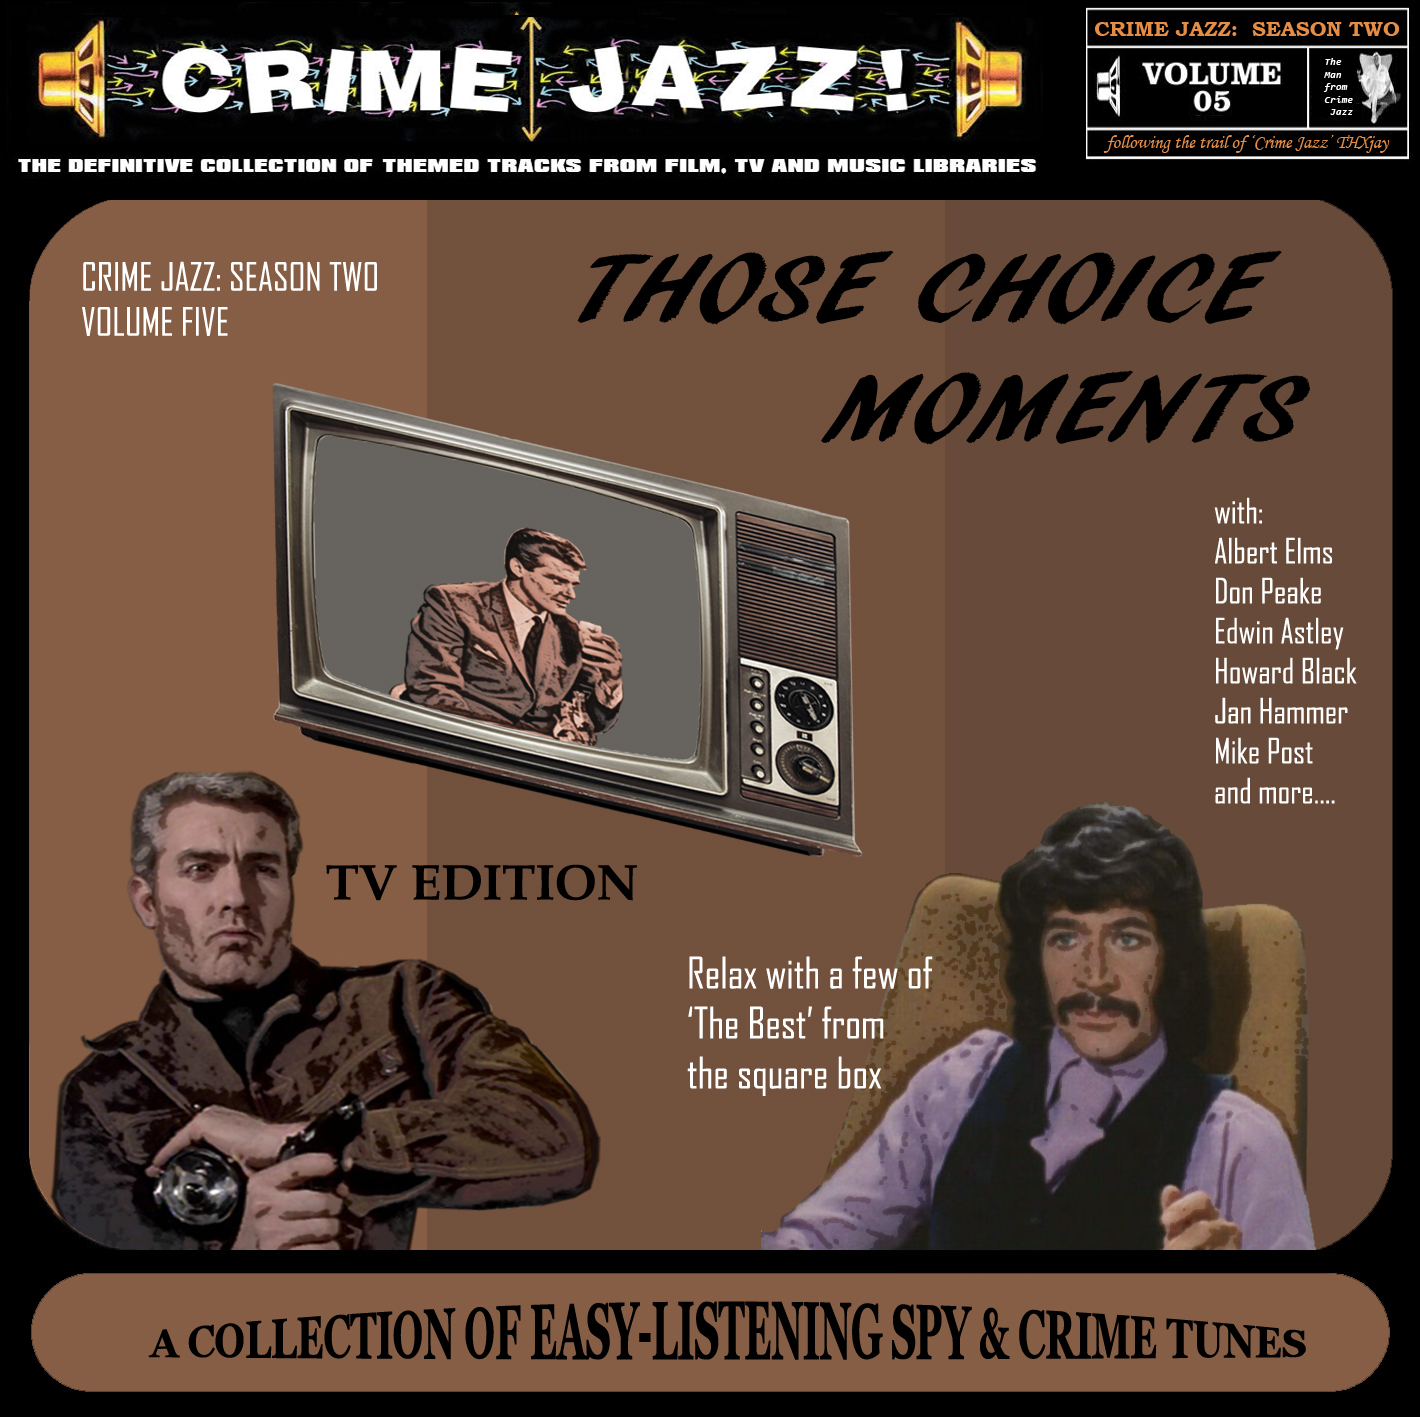 Crime Jazz Season 2 Volume 5 cover art